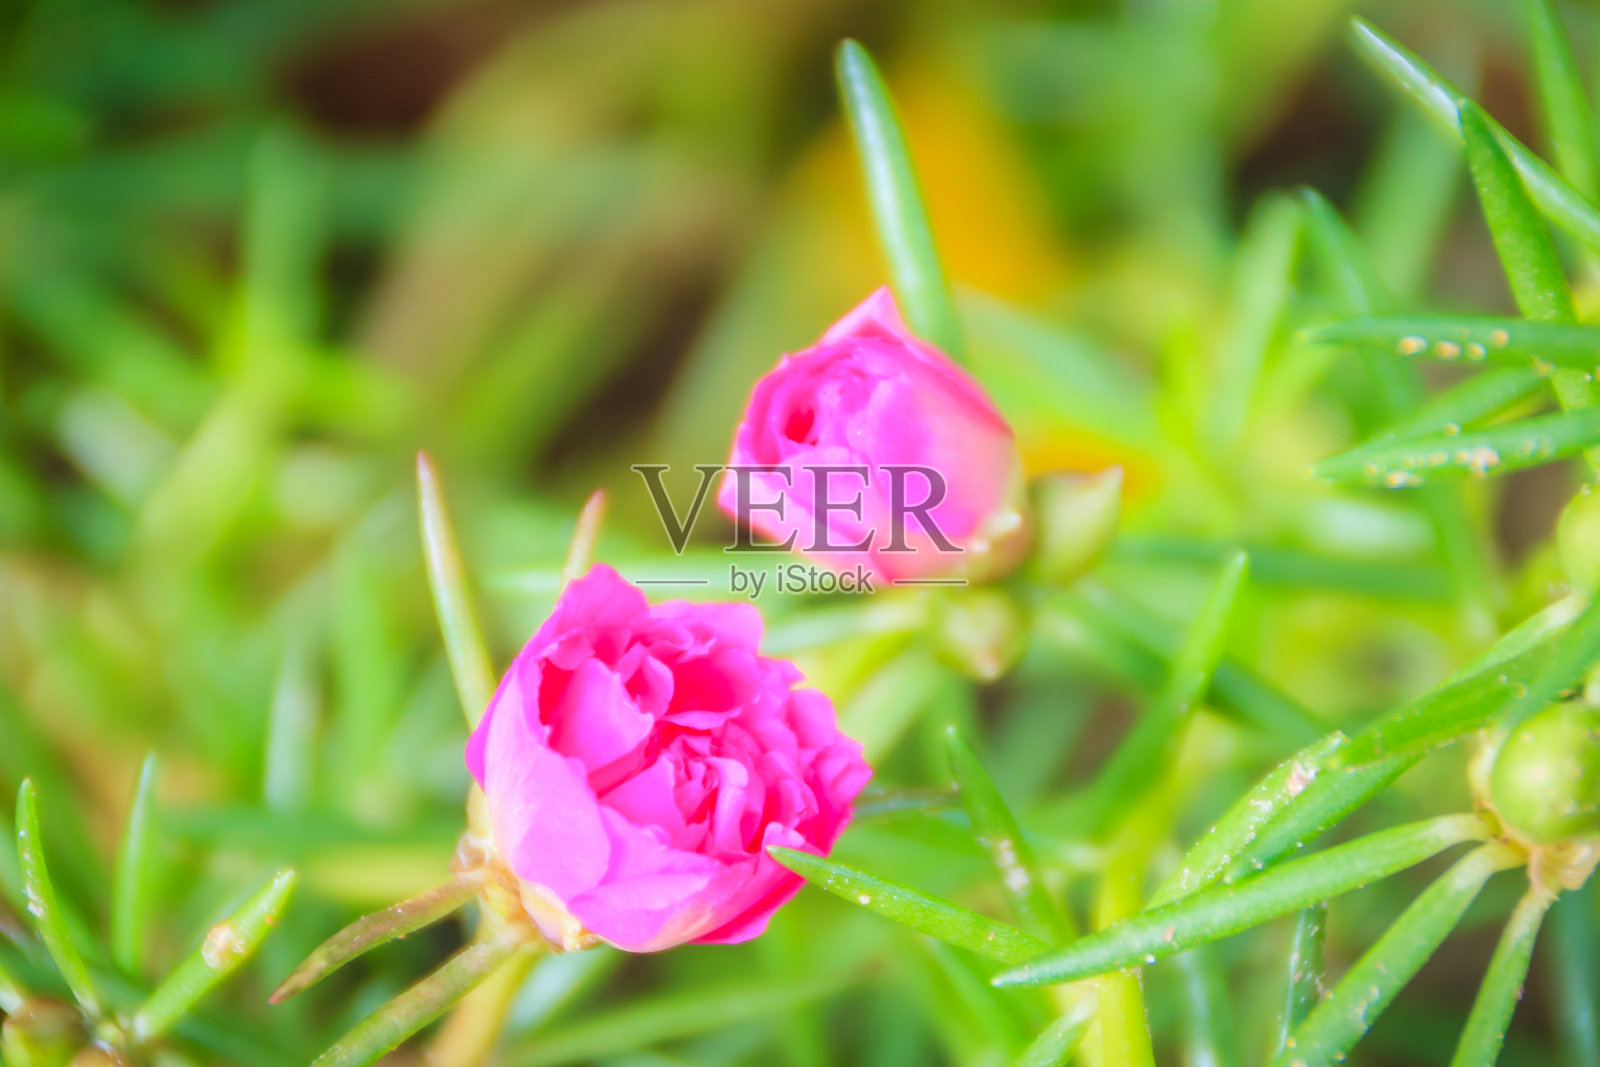 美丽的粉红色马齿苋花，也被称为普通马齿苋、小猪草、红根或马齿苋。照片摄影图片